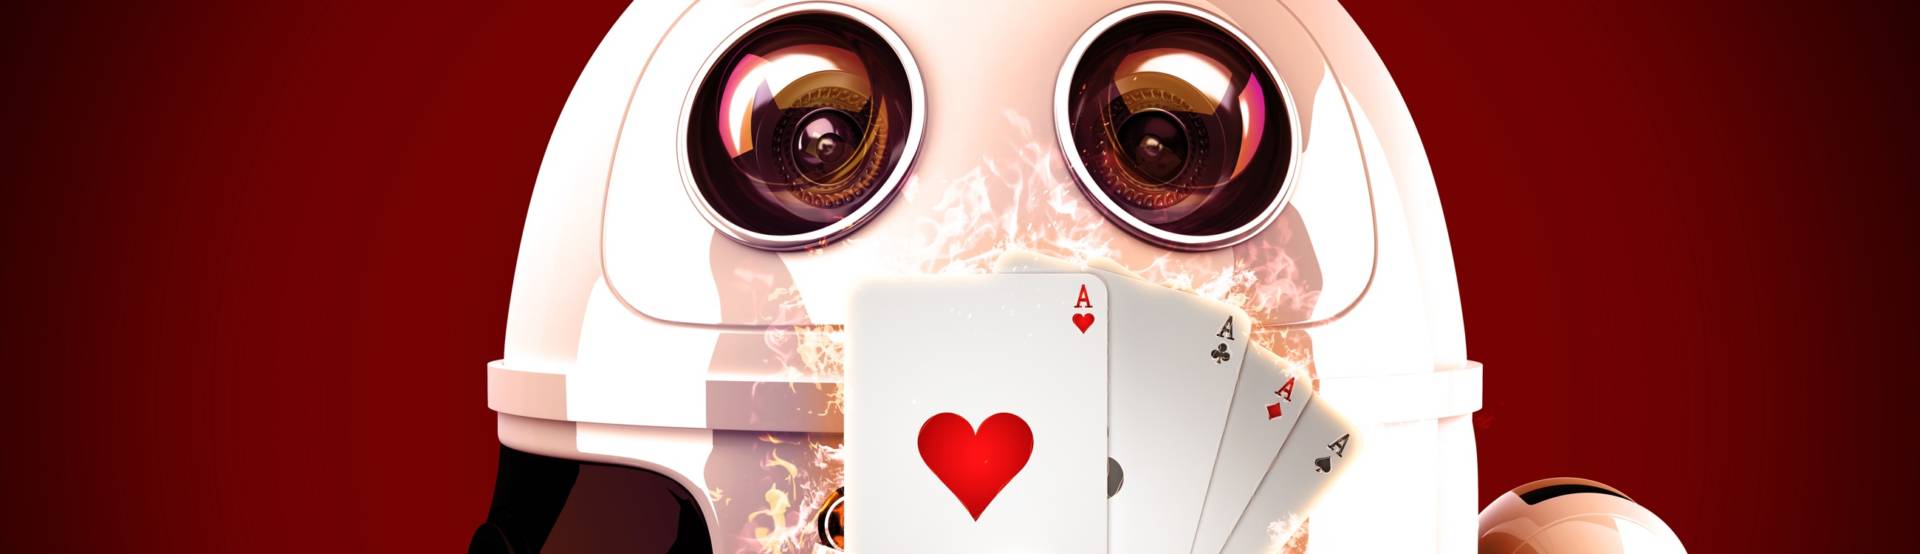 L’Intelligenza artificiale sta cambiando il Poker